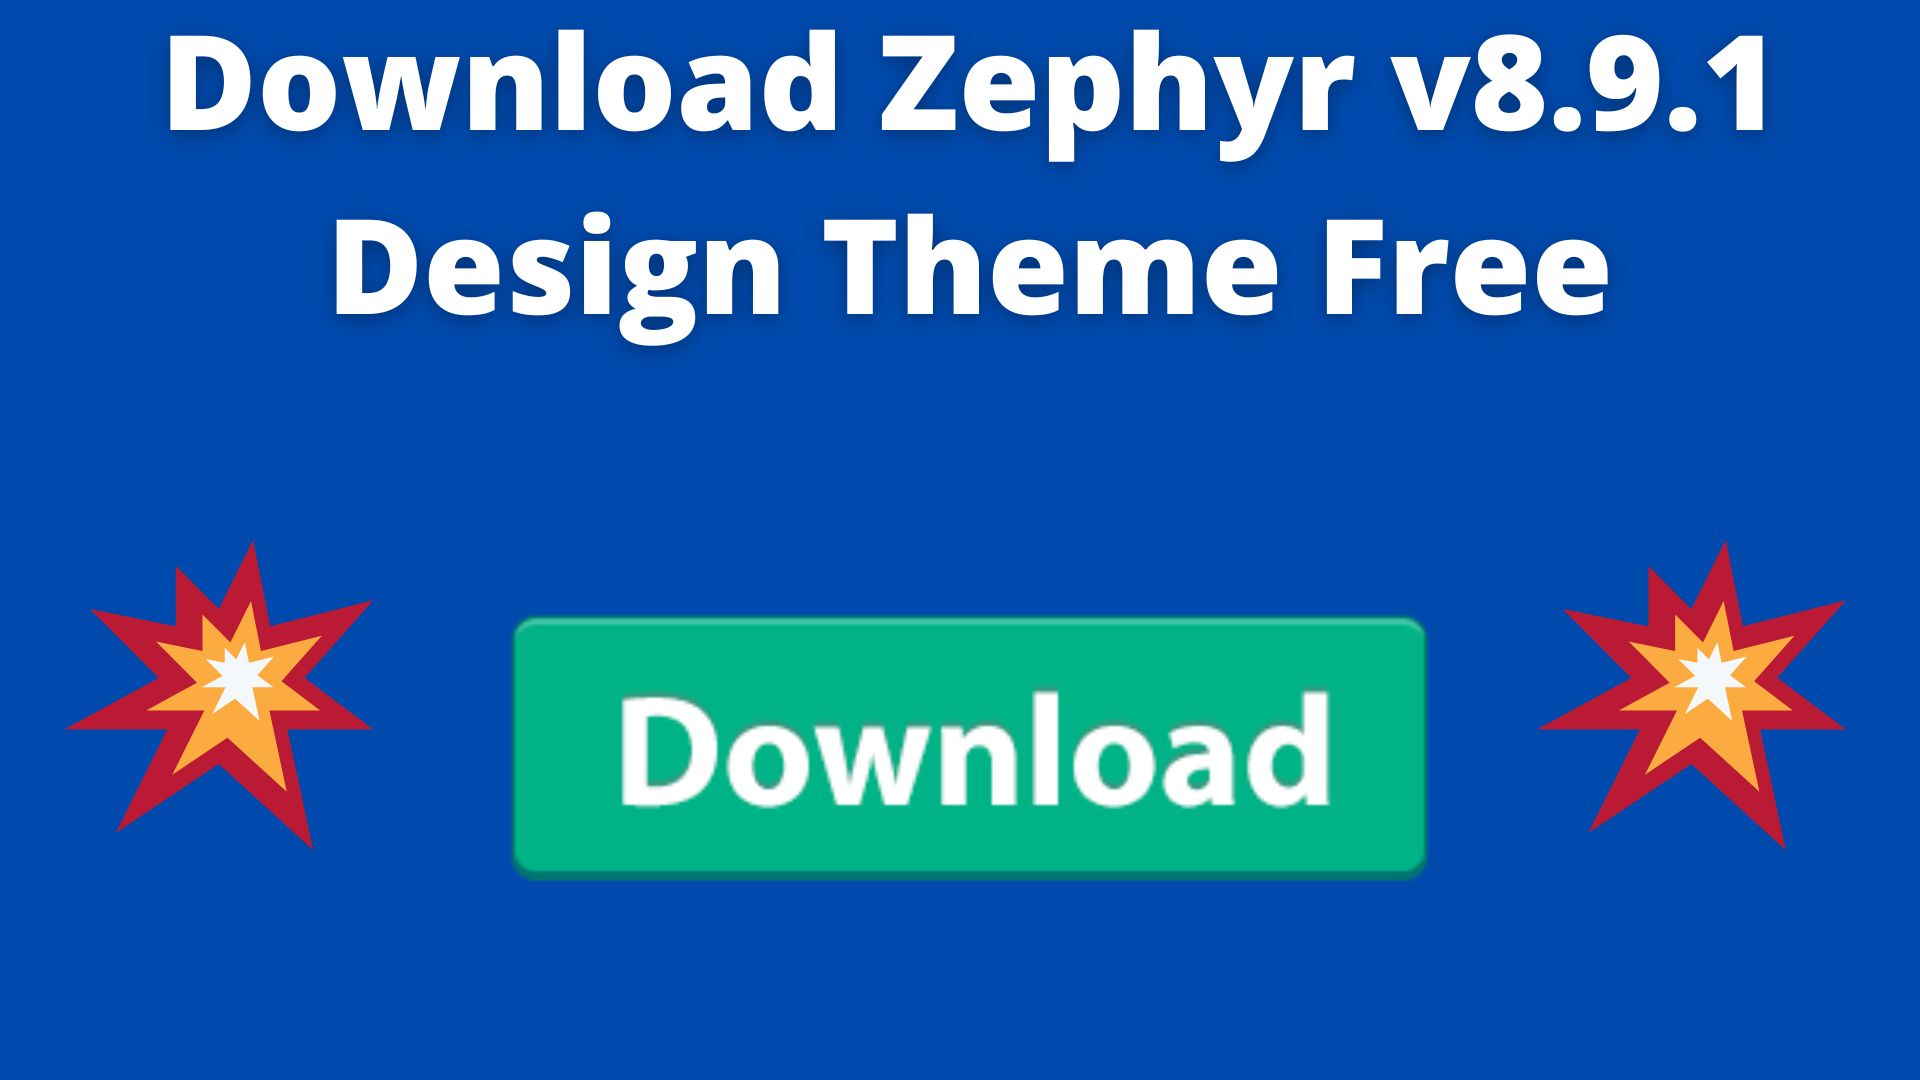 Download Zephyr V8.9.1 Design Theme Free